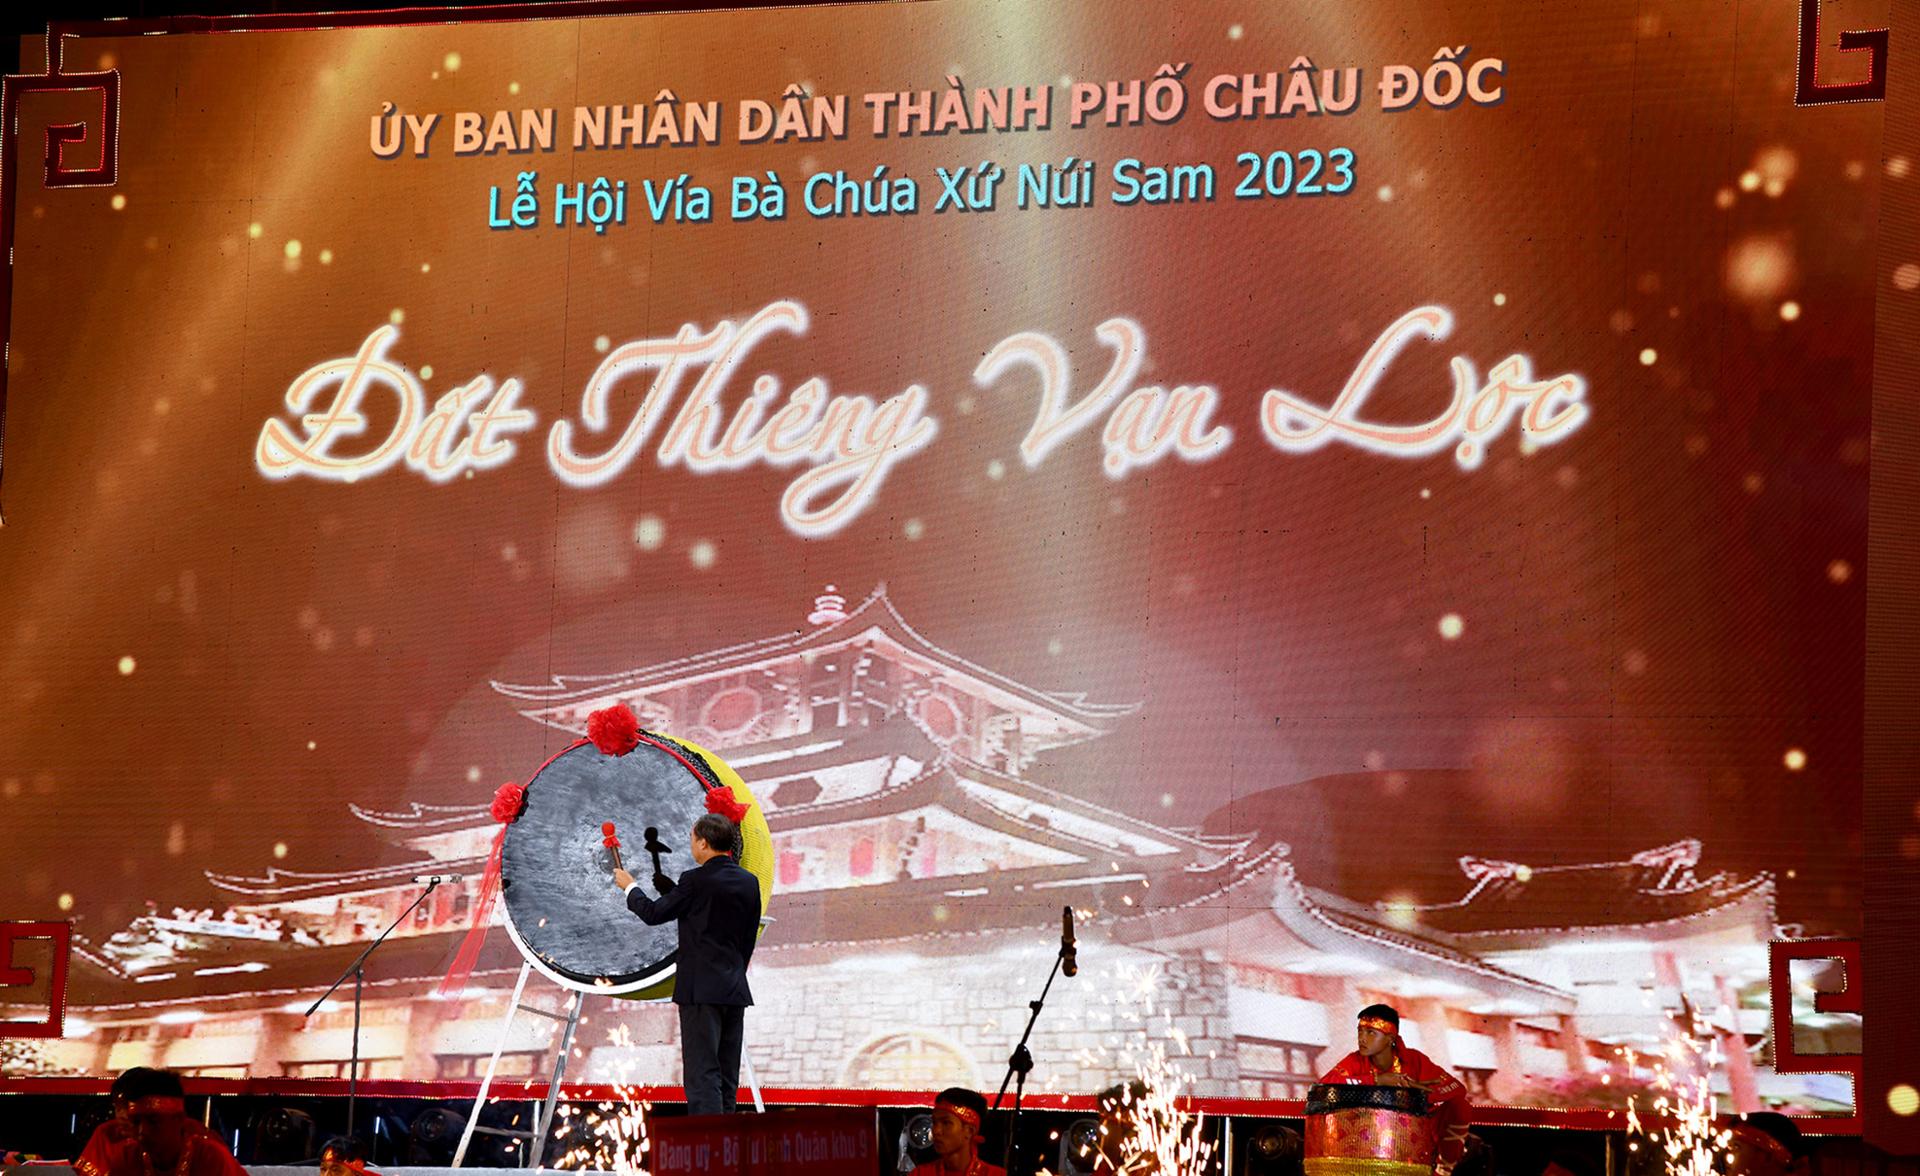 Bí thư Thành ủy, Chủ tịch UBND TP. Châu Đốc Lâm Quang Thi thực hiện nghi thức đánh trống khai hội Lễ hội Vía Bà Chúa Xứ núi Sam năm 2023